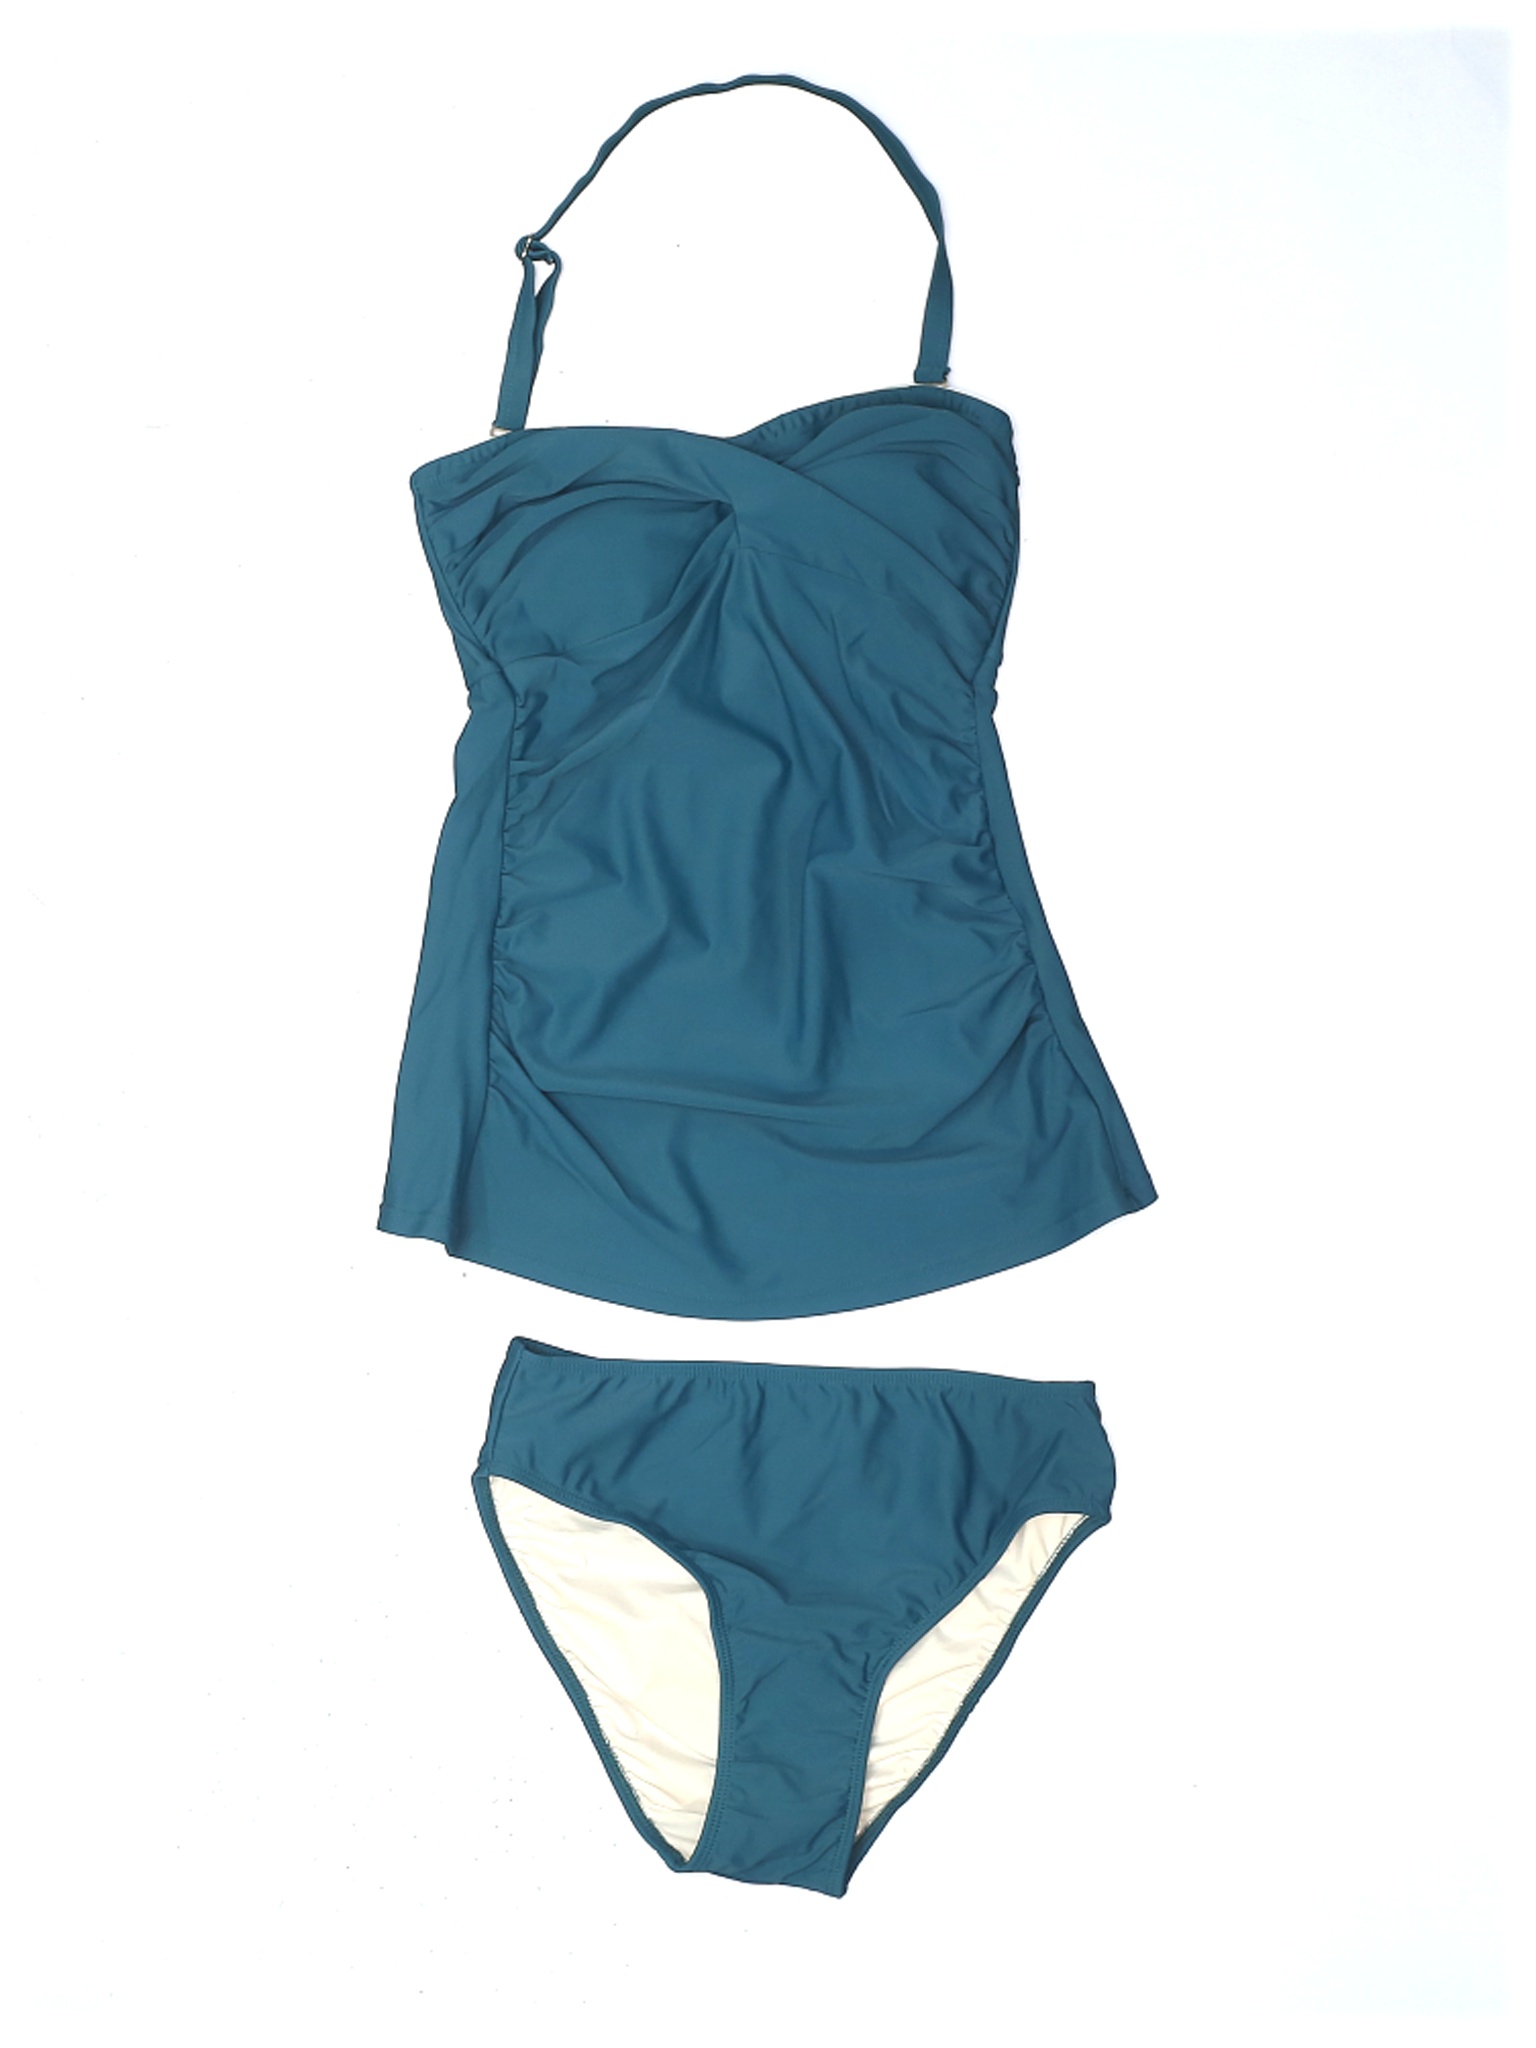 Venus Women Green Two Piece Swimsuit 6 | eBay